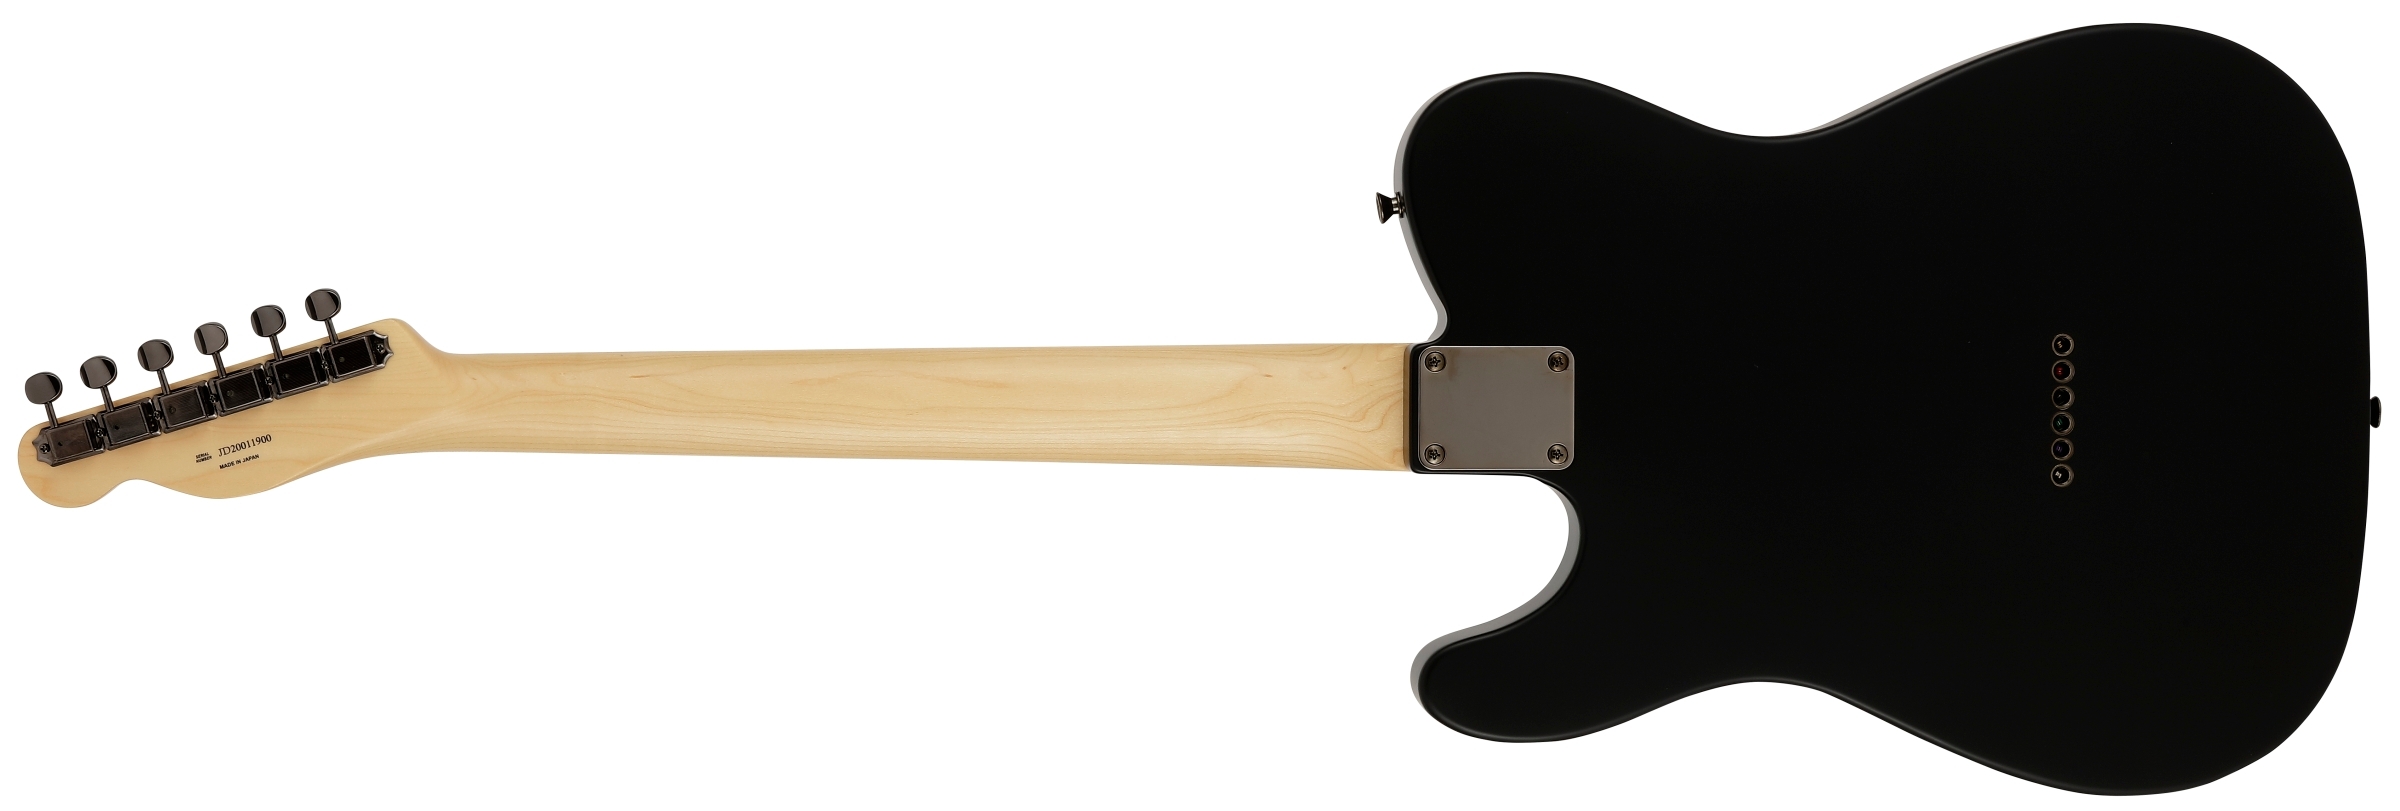 買付け和歌山市引取限定 Fender Japan ギター strat ocaster ブラック系[jggz] フェンダー